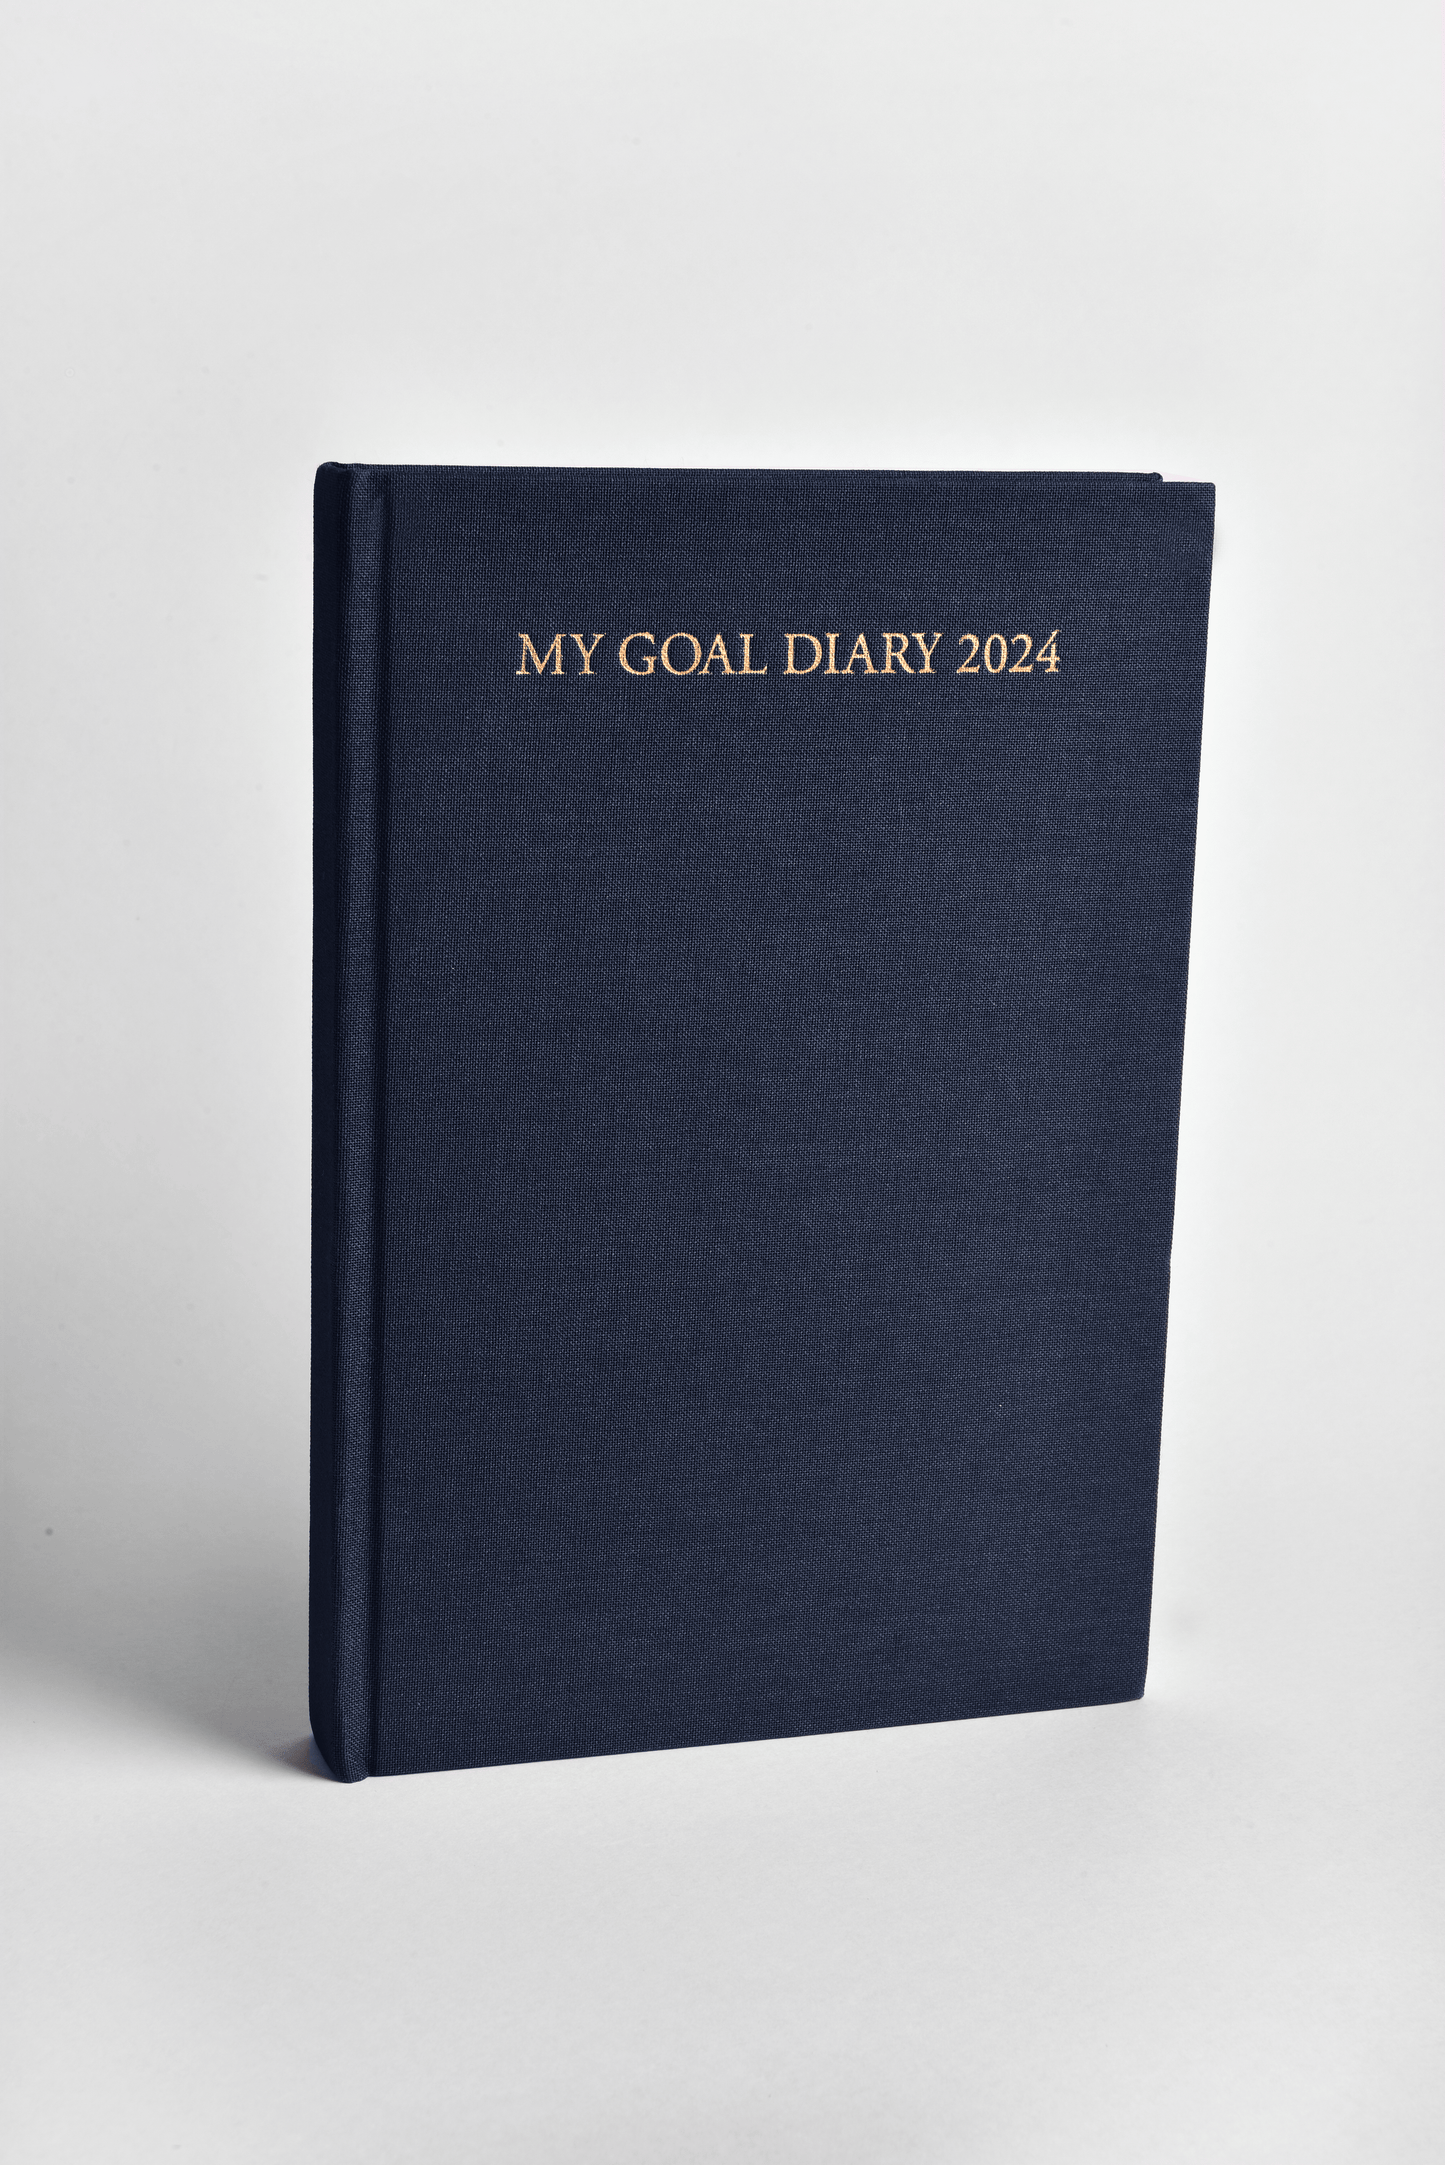 My Goal Diary 2024 - Executive Linen Collection